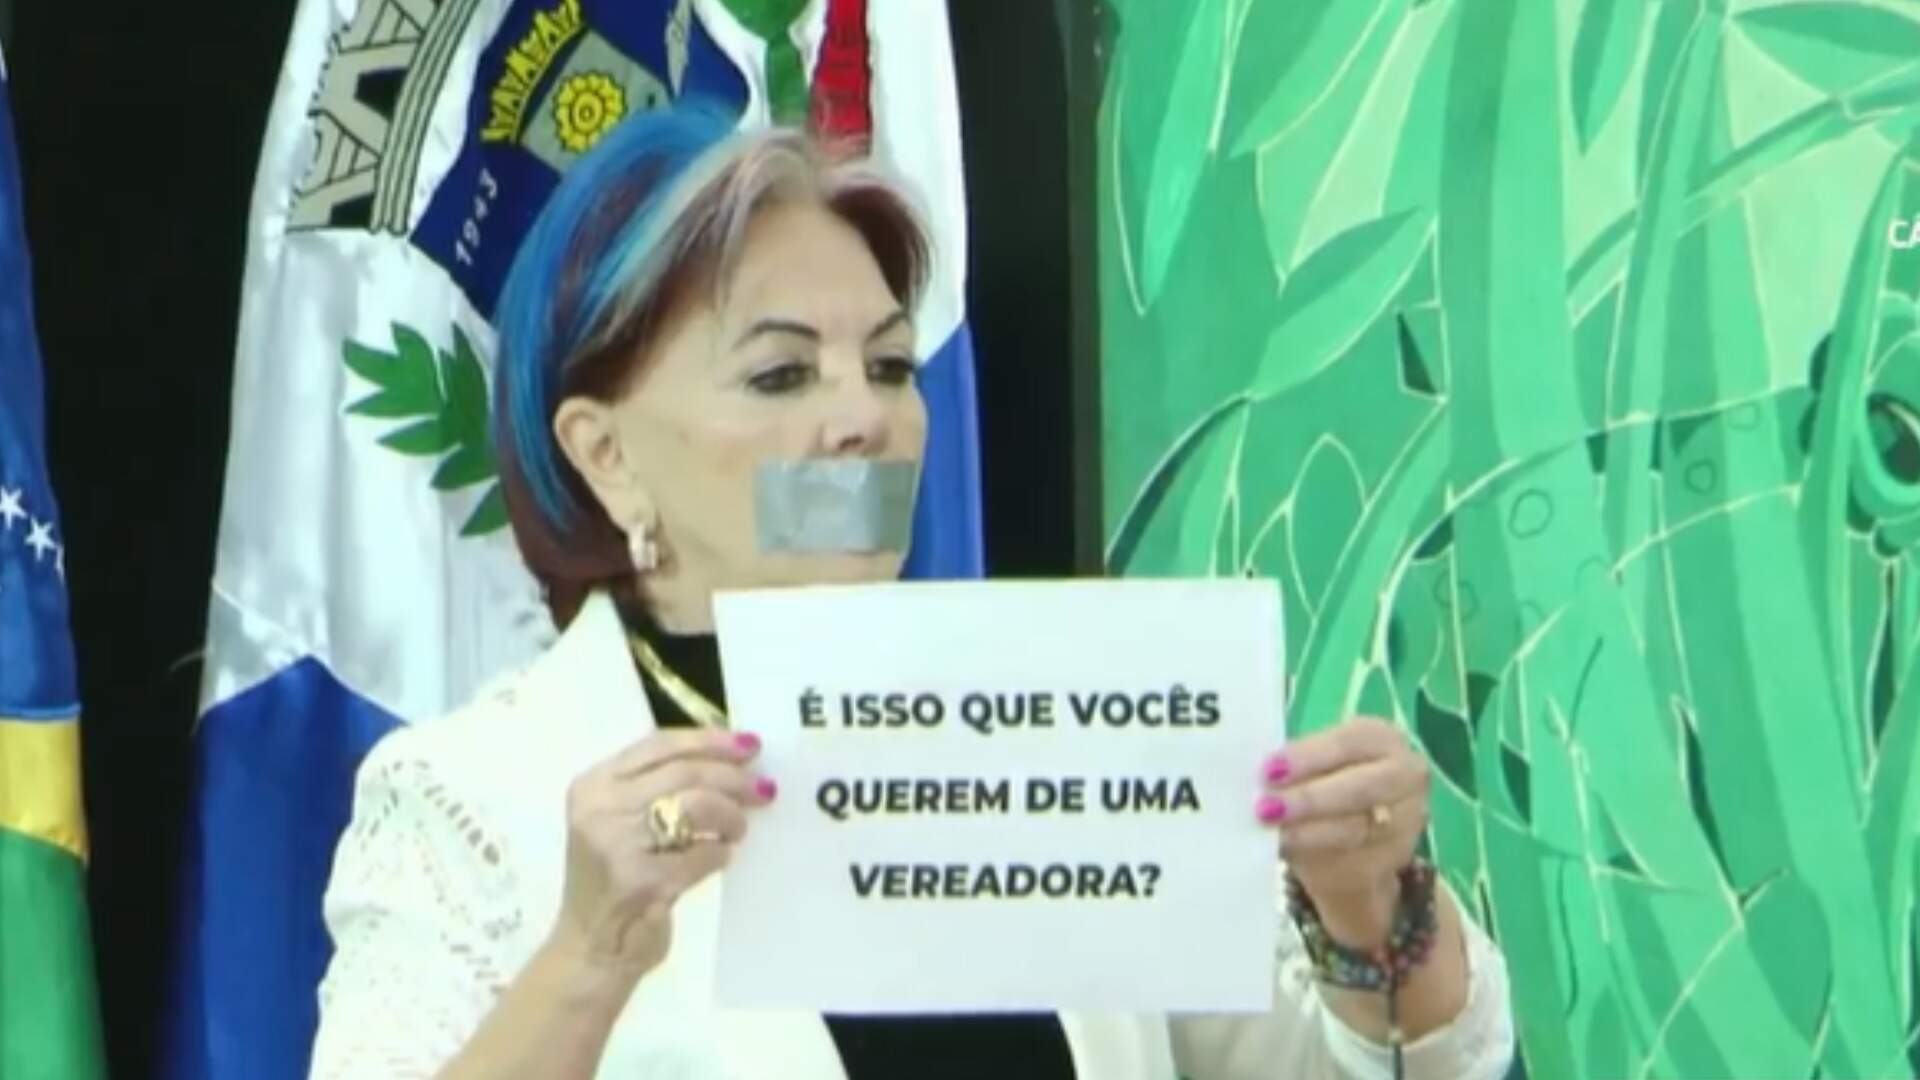 VÍDEO: Após corte de microfone, vereadora de Ponta Porã protesta e alega ‘censura’